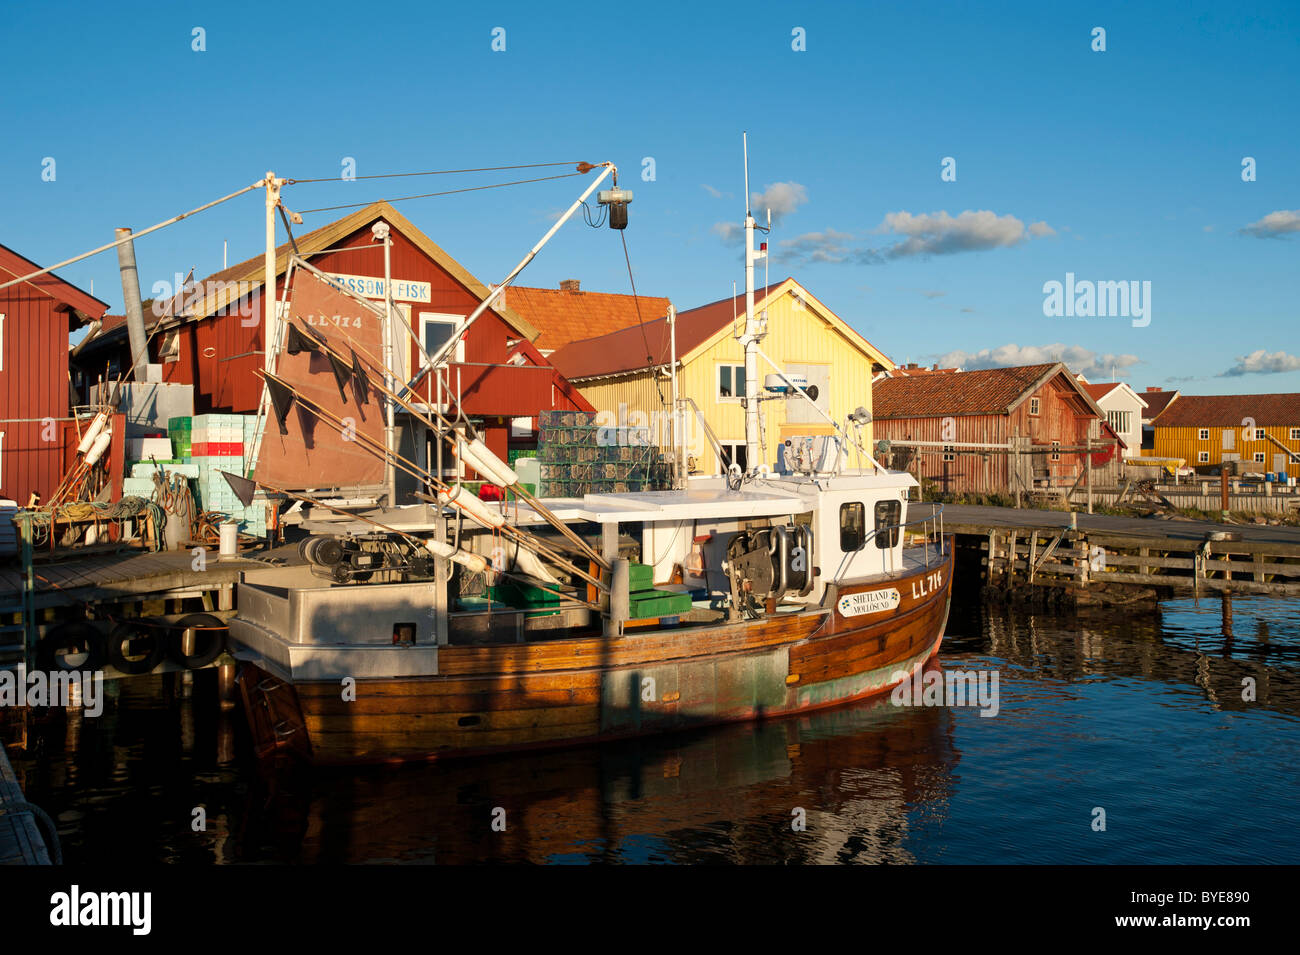 Port avec bateaux de pêche et de la pêche, Molloesund Goetaland Vaestra, comté, la Suède, Europe Banque D'Images